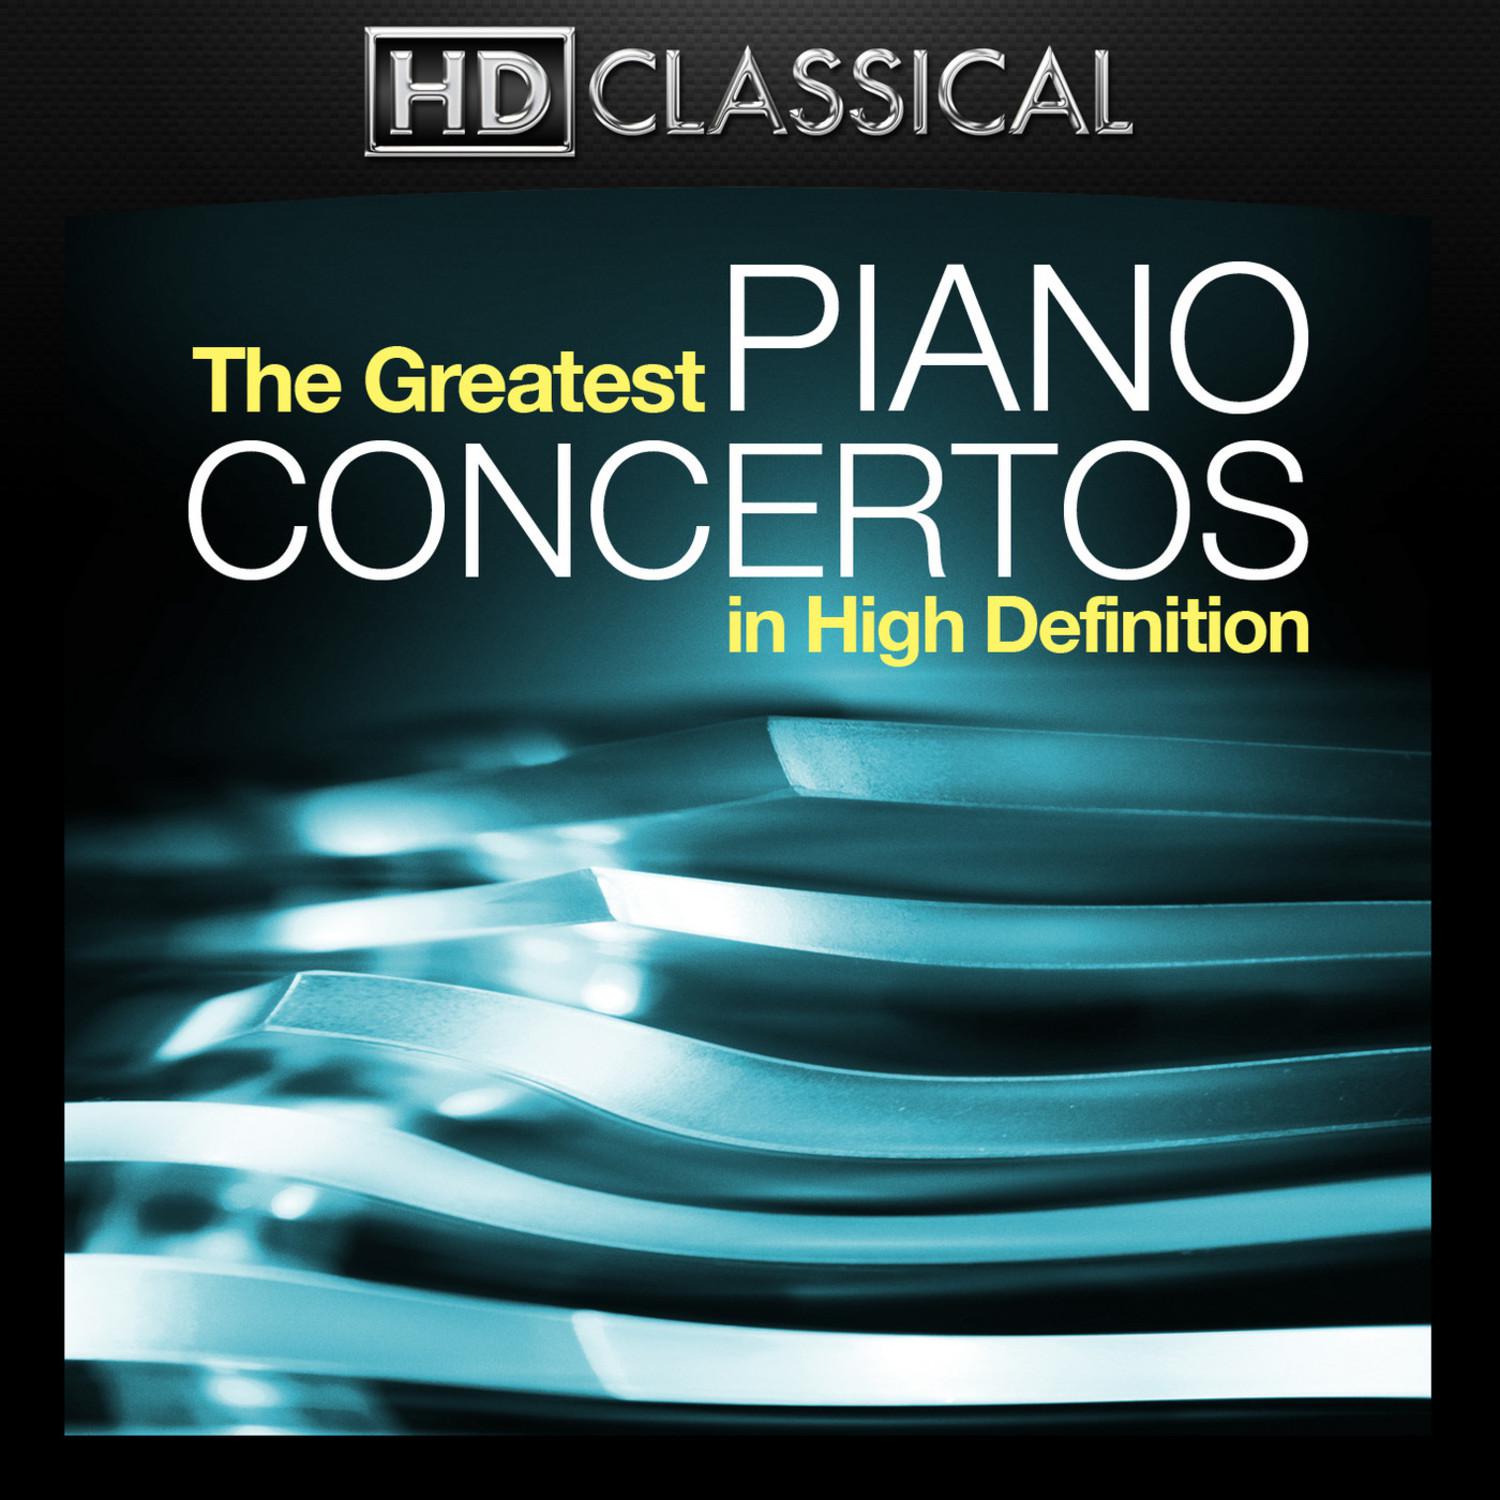 Concerto in A Minor for Piano and Orchestra, Op. 16: I. Allegro molto moderato